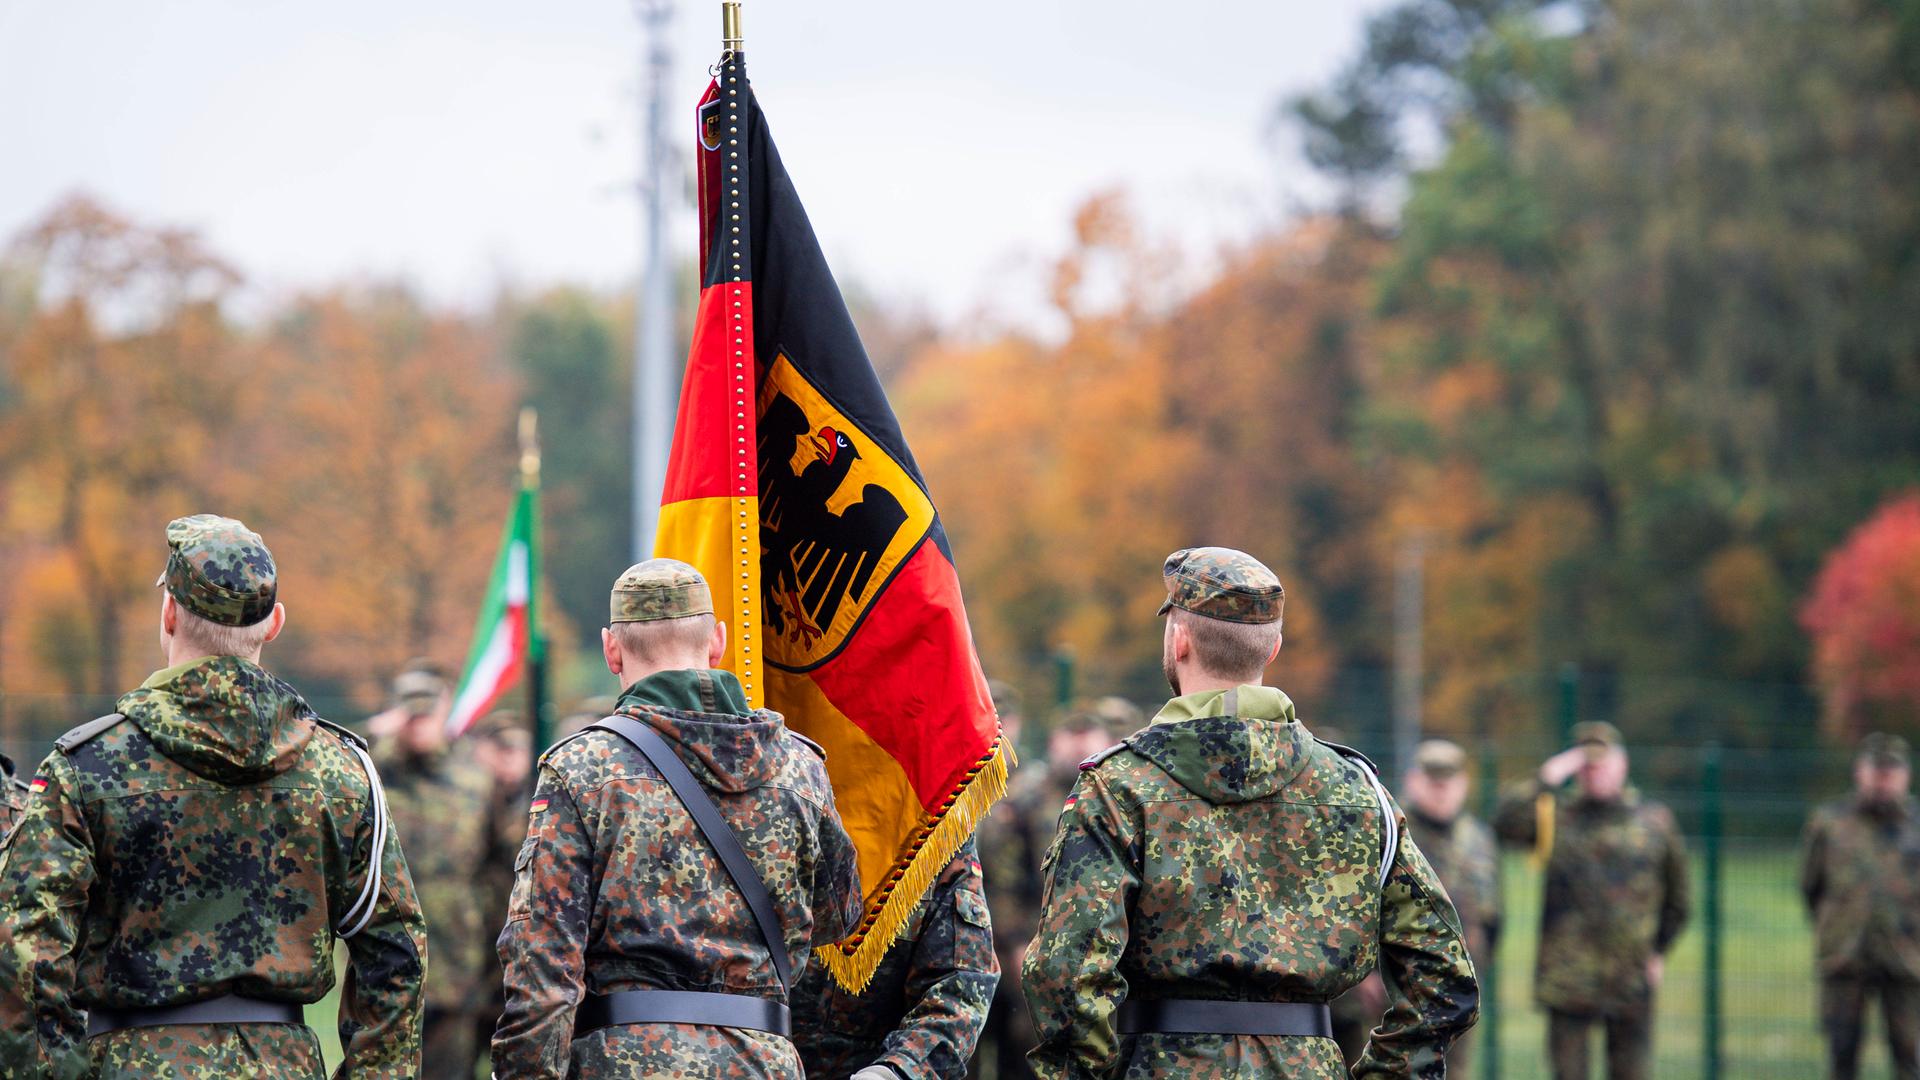 Zu sehen sind Bundeswehrsoldaten in ihrer Kaserne.